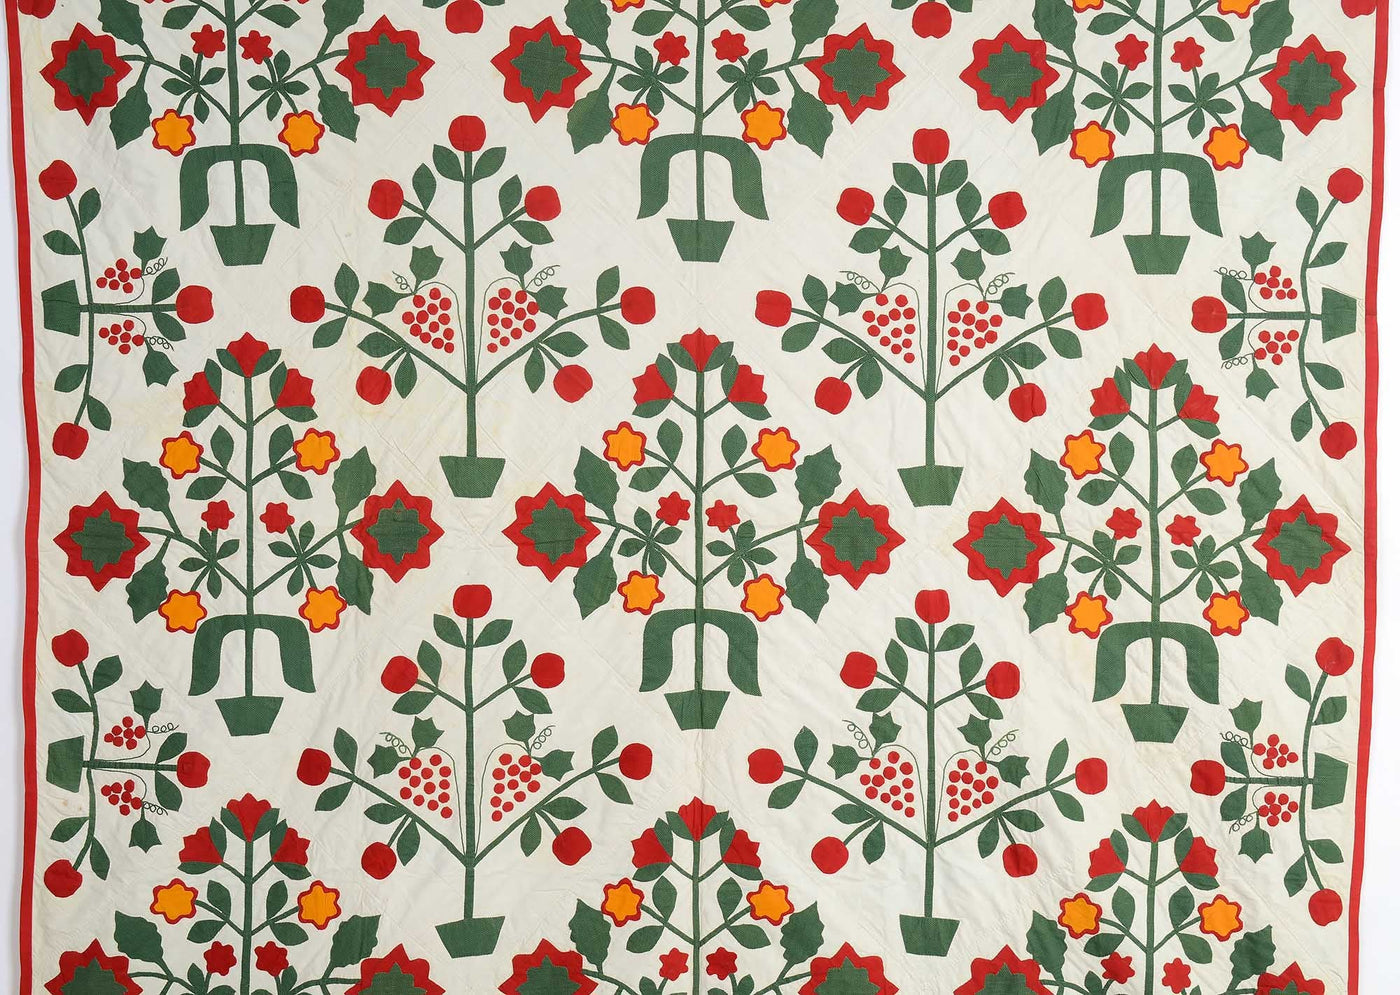 pots-of-flowers-applique-quilt-1446052-detail-1